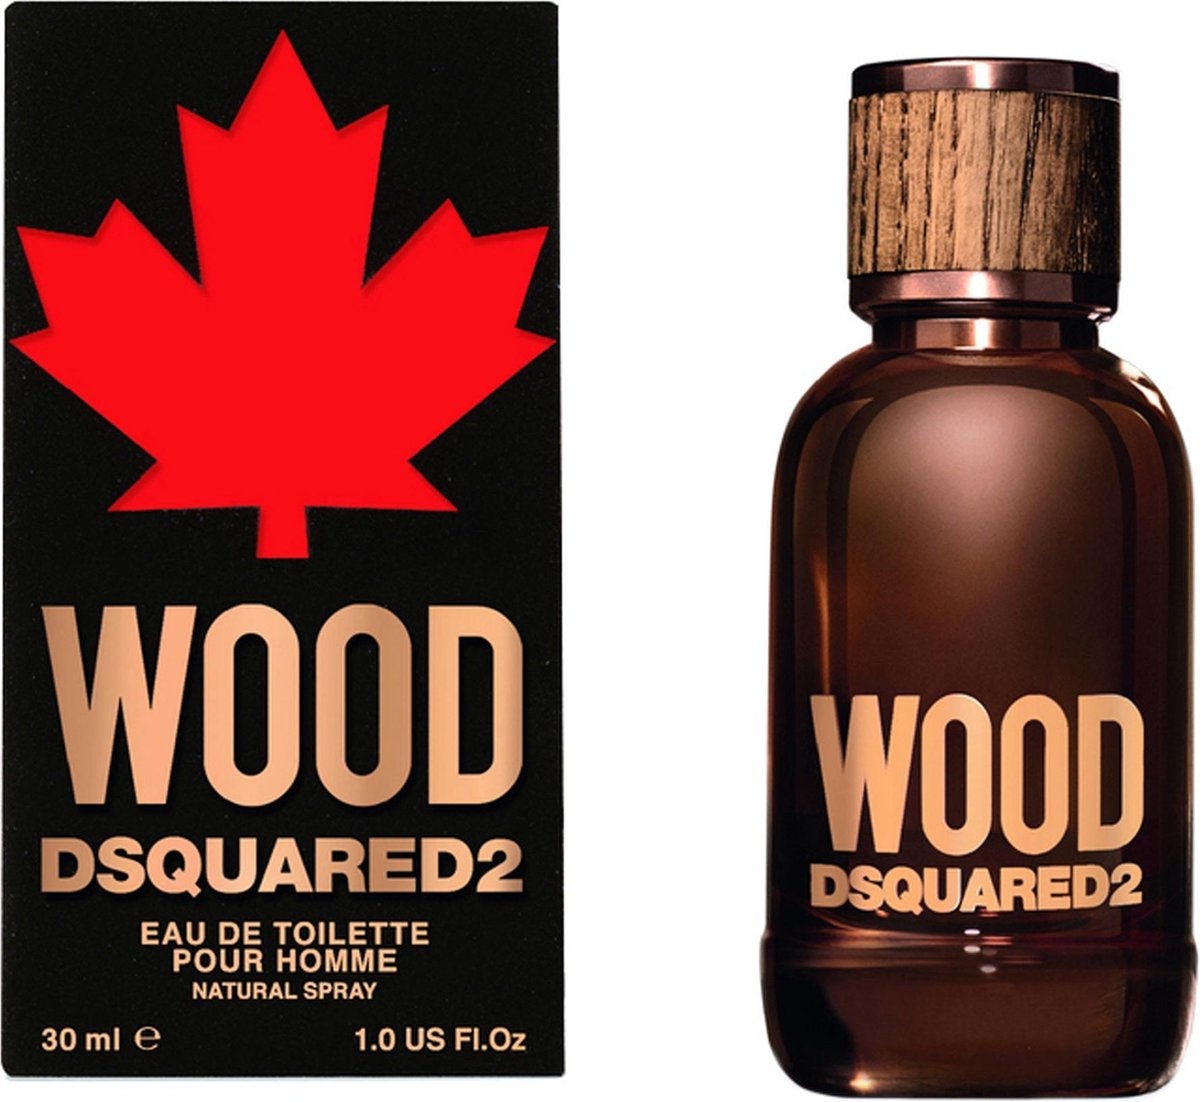 Dsquared2 Wood Pour Homme - 30ml - Eau de toilette - Verpakking beschadigd